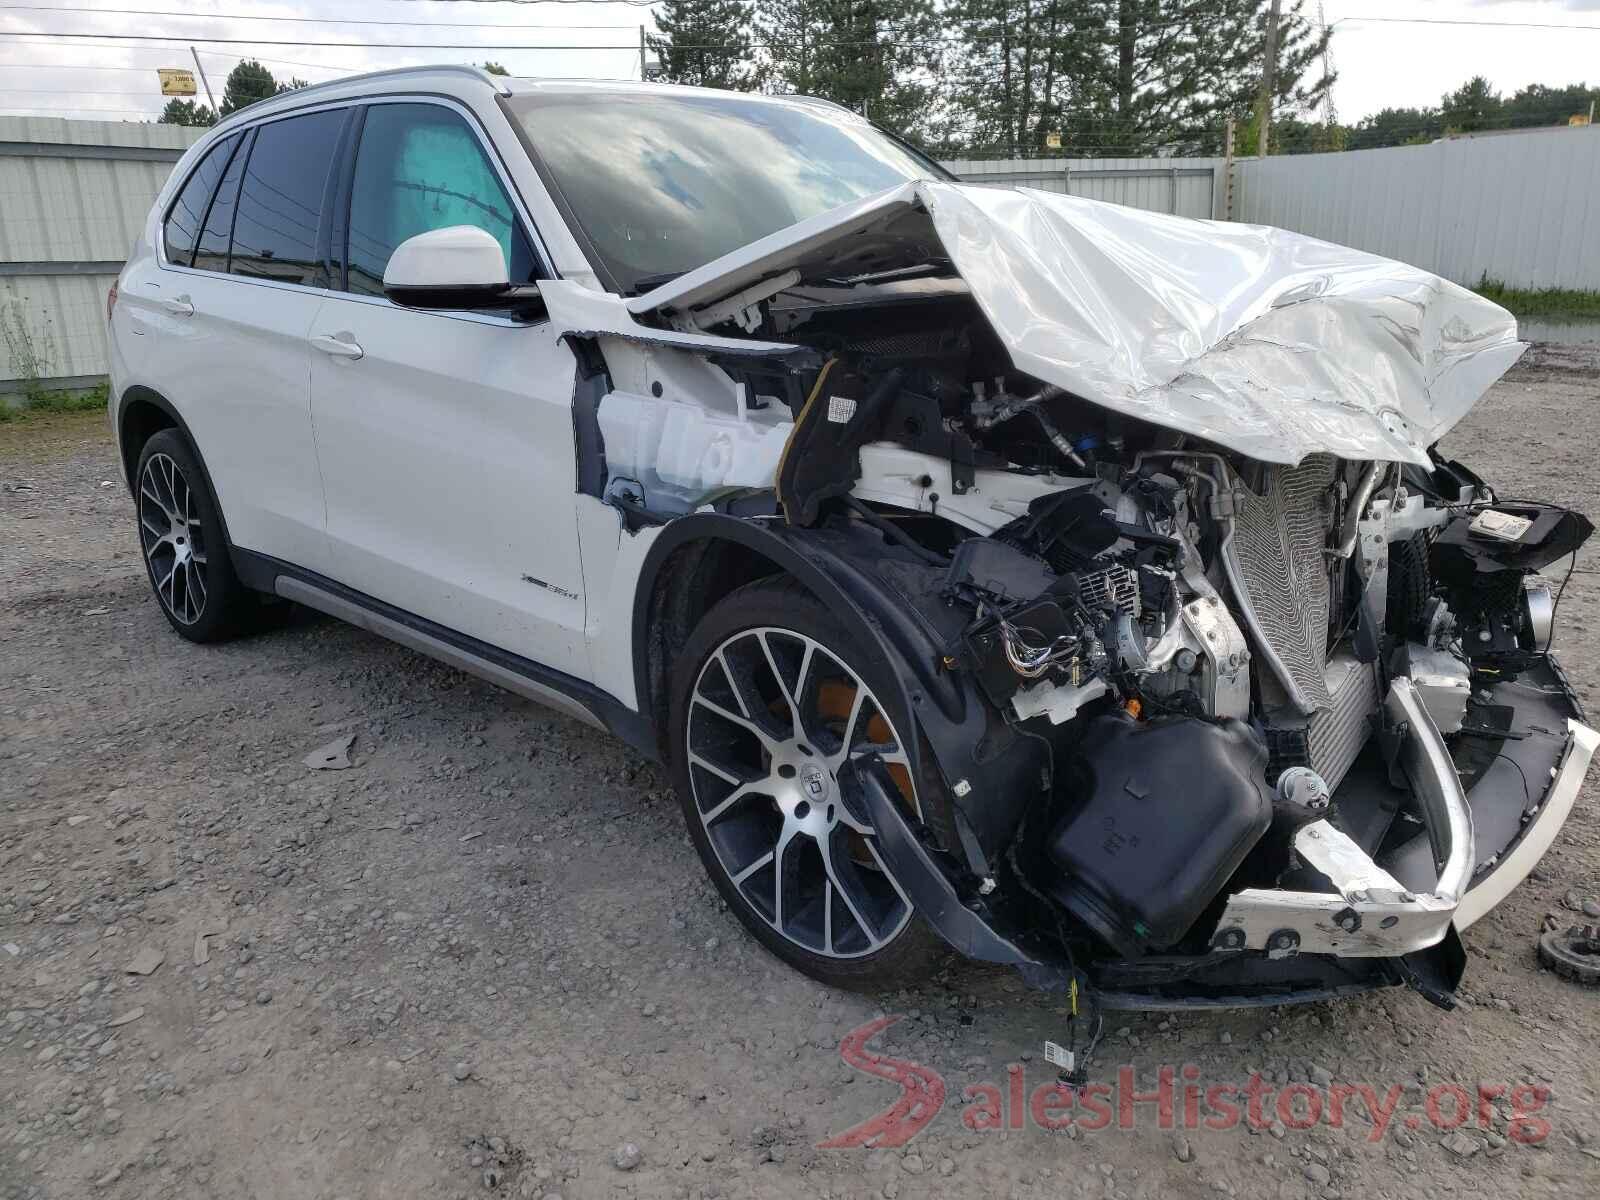 5UXKS4C50J0Y20807 2018 BMW X5